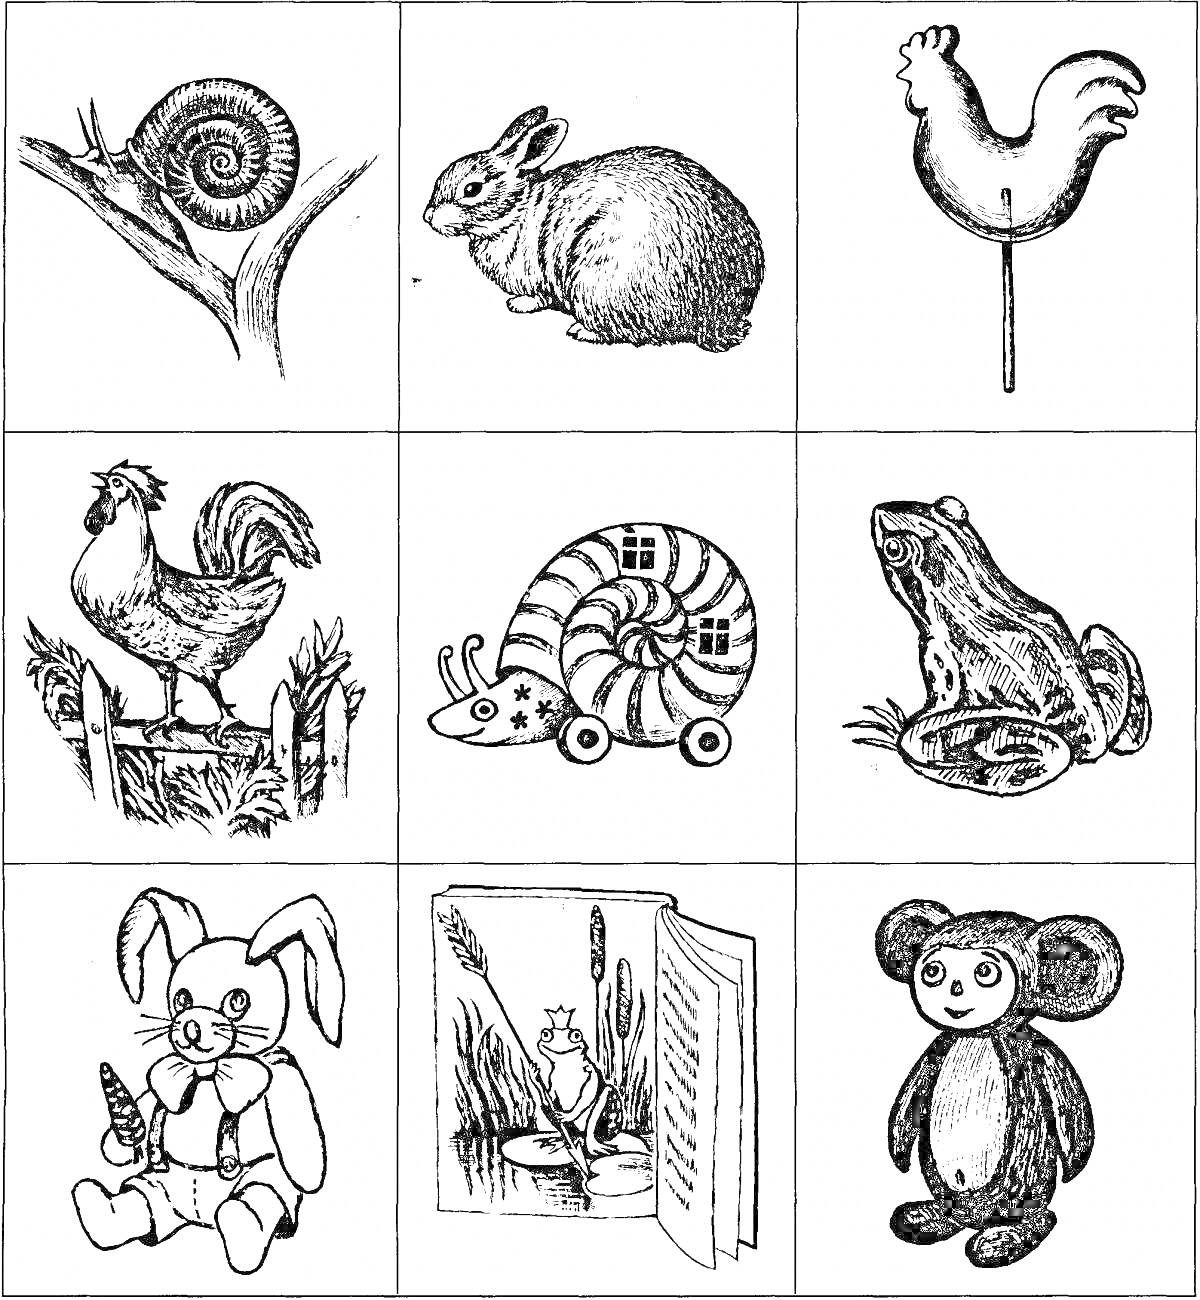 Раскраска набор картинок с улиткой, кроликом, петухом, лягушкой, игрушечными кроликом, петухом, улиткой на колесиках, а также игрушечным чебурашкой и книгой